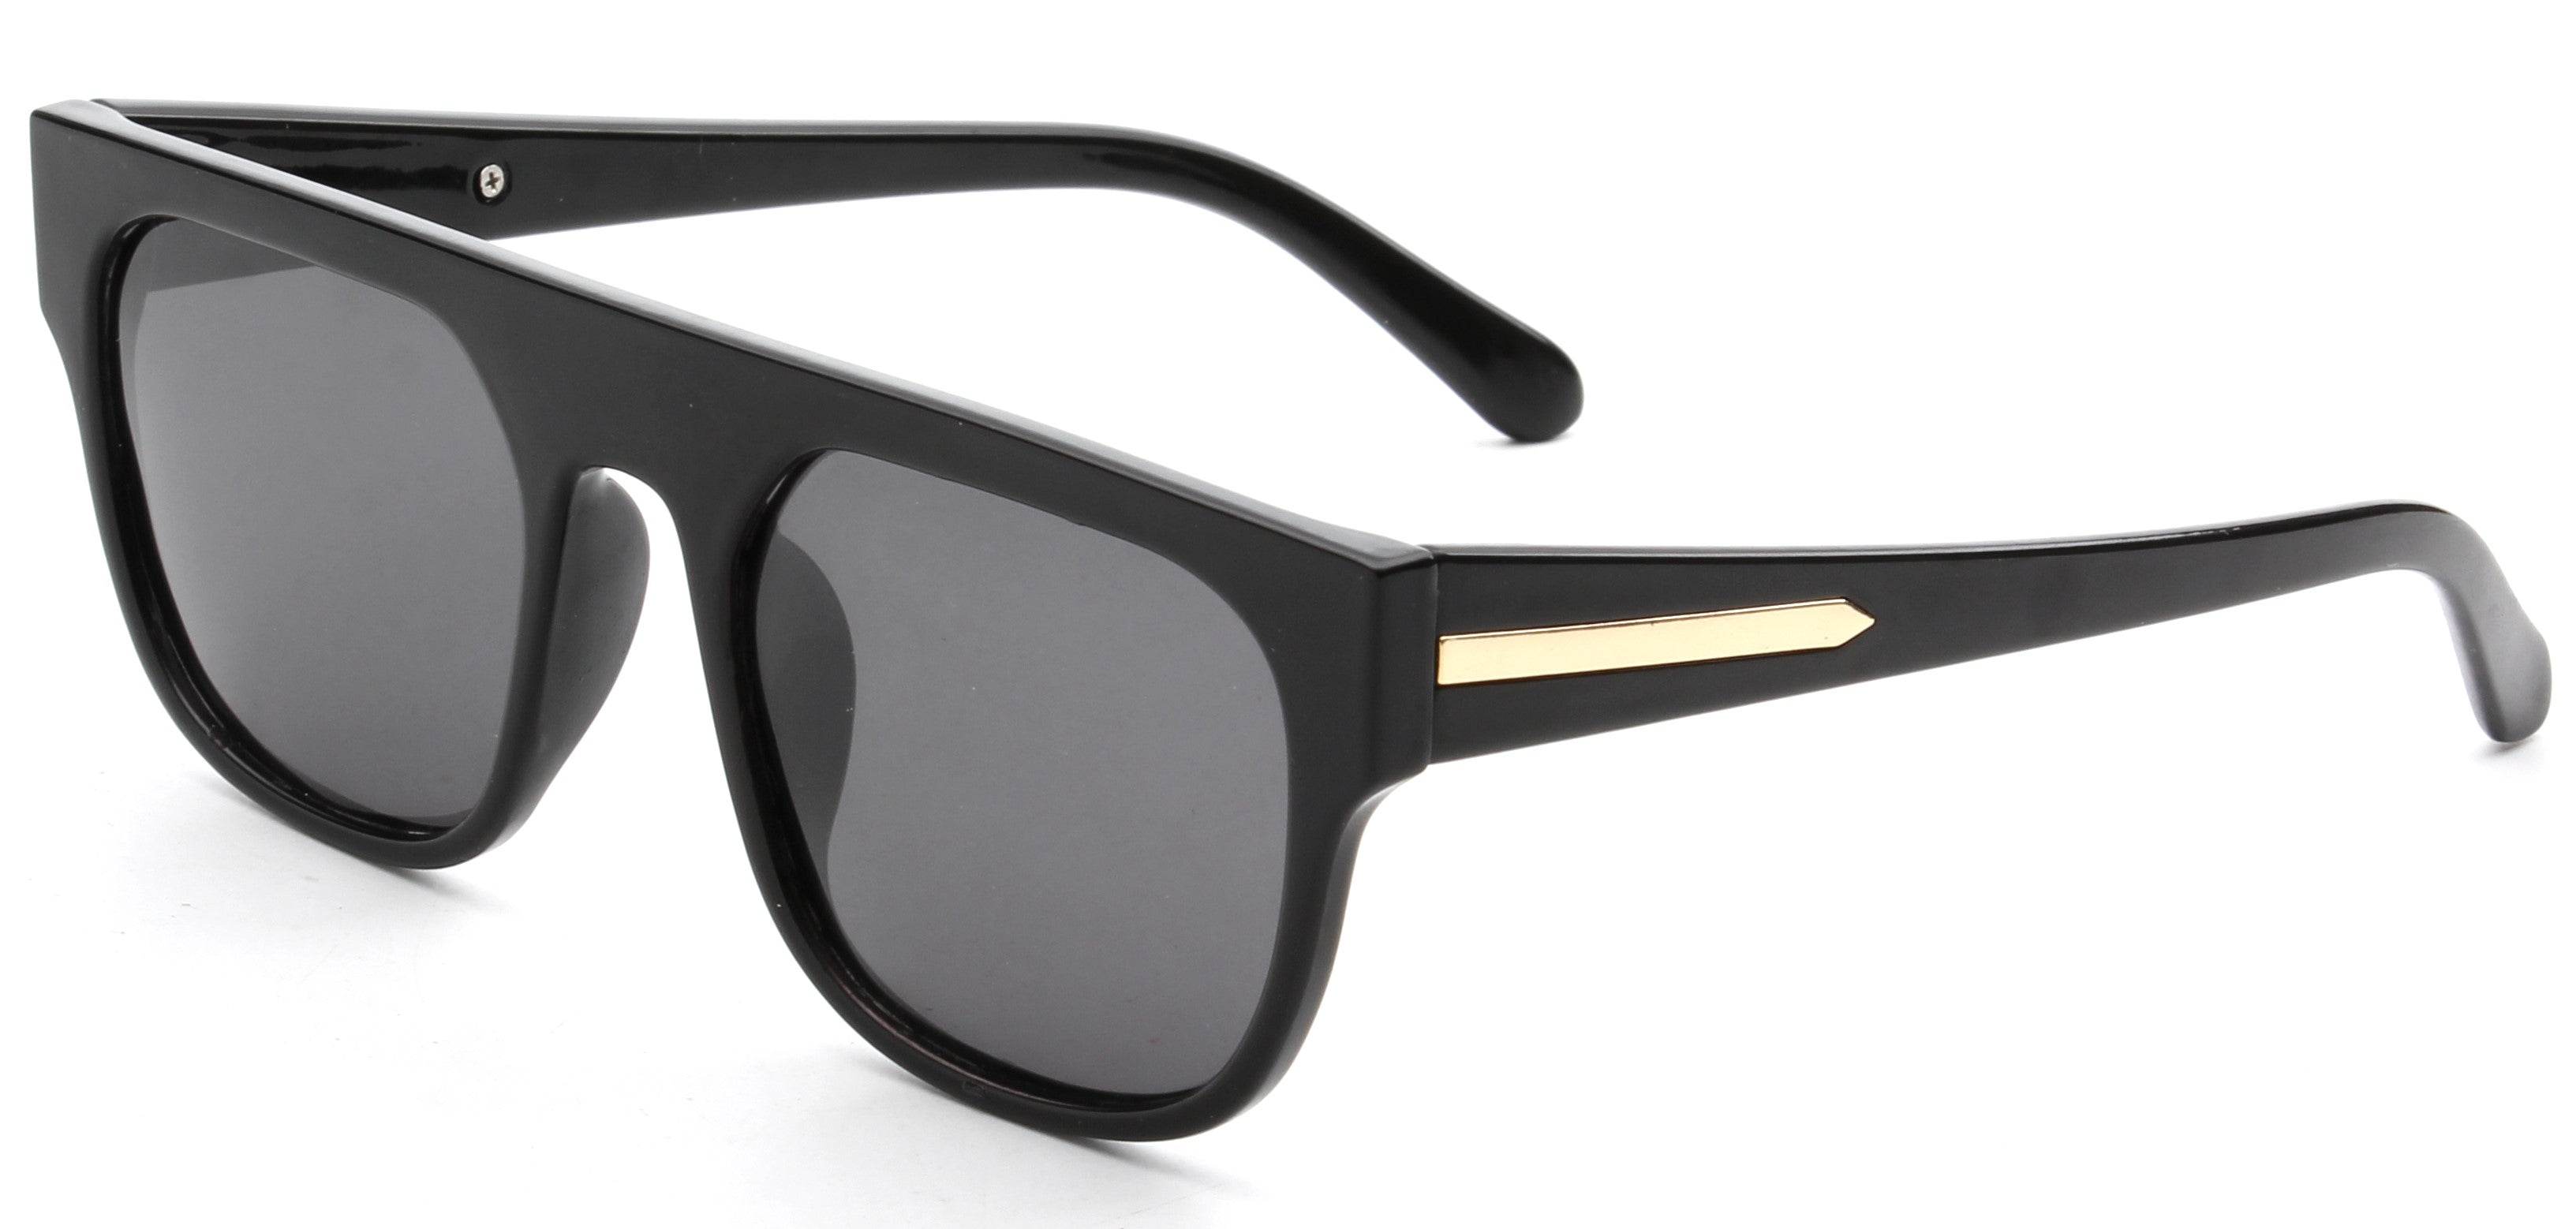 S1096 - Retro Square Fashion Sunglasses Black